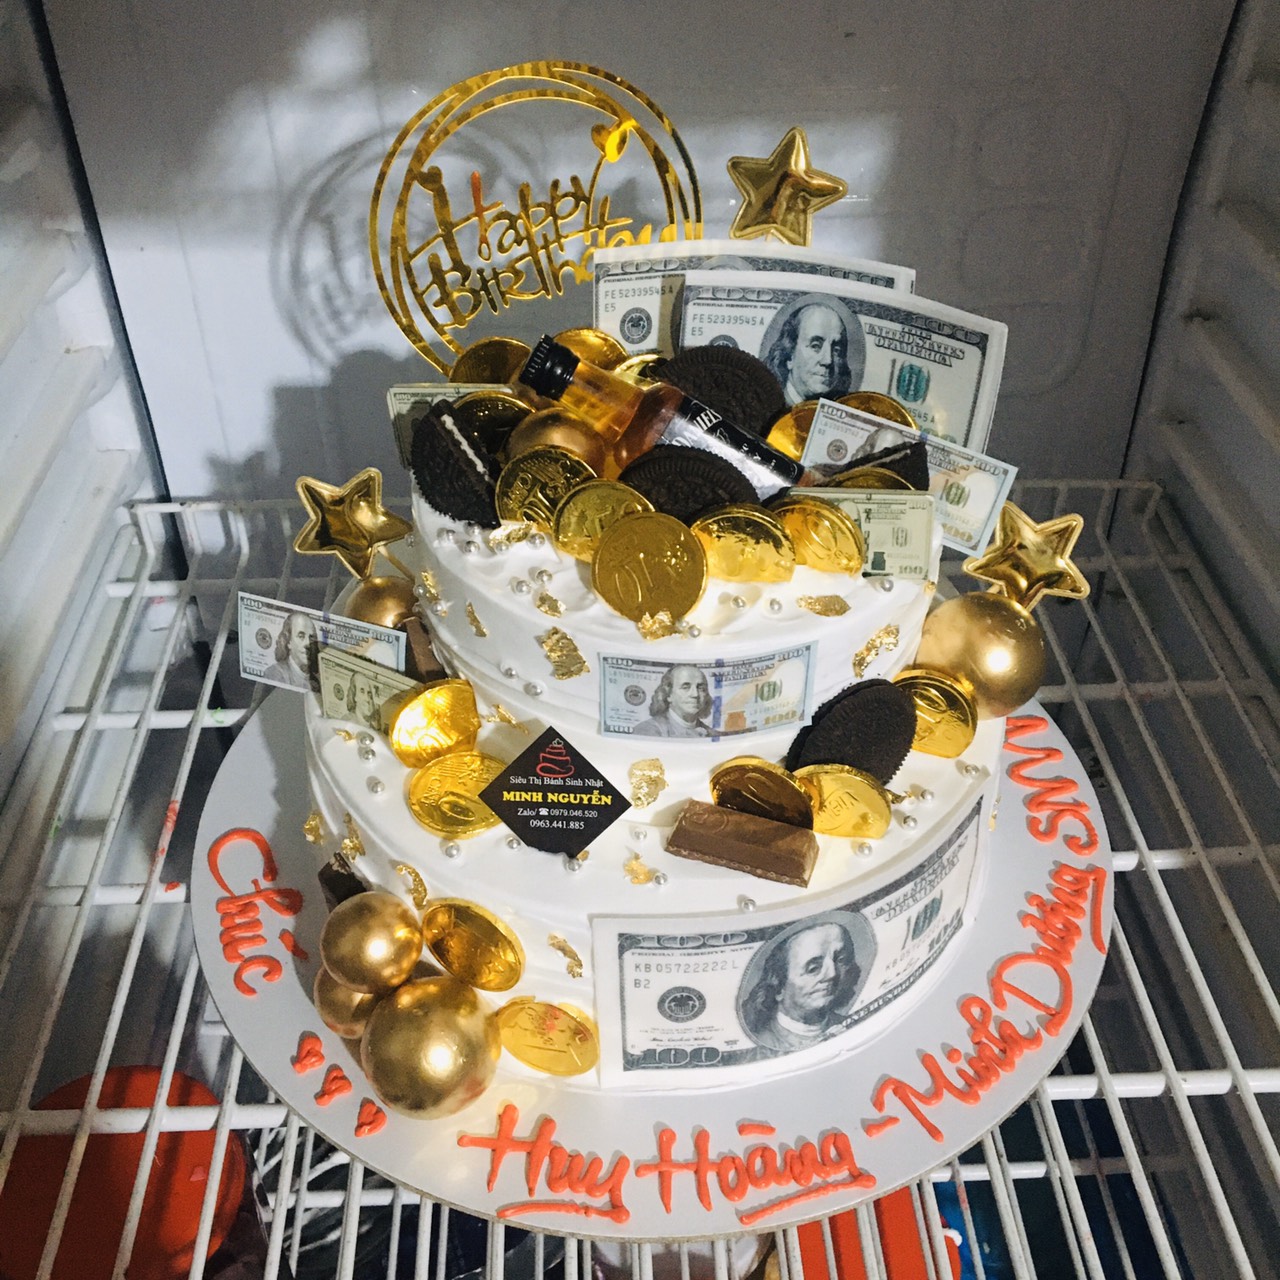 Bánh sinh nhật đô la - Tiền đô: Đón sinh nhật của bạn bằng một chiếc bánh đầy sự sang trọng và đẳng cấp - bánh sinh nhật tiền đô. Với một chiếc bánh xếp bằng đô la, bạn sẽ không chỉ có một tác phẩm nghệ thuật độc đáo mà còn là một món quà đặc biệt để tặng người thân và bạn bè.